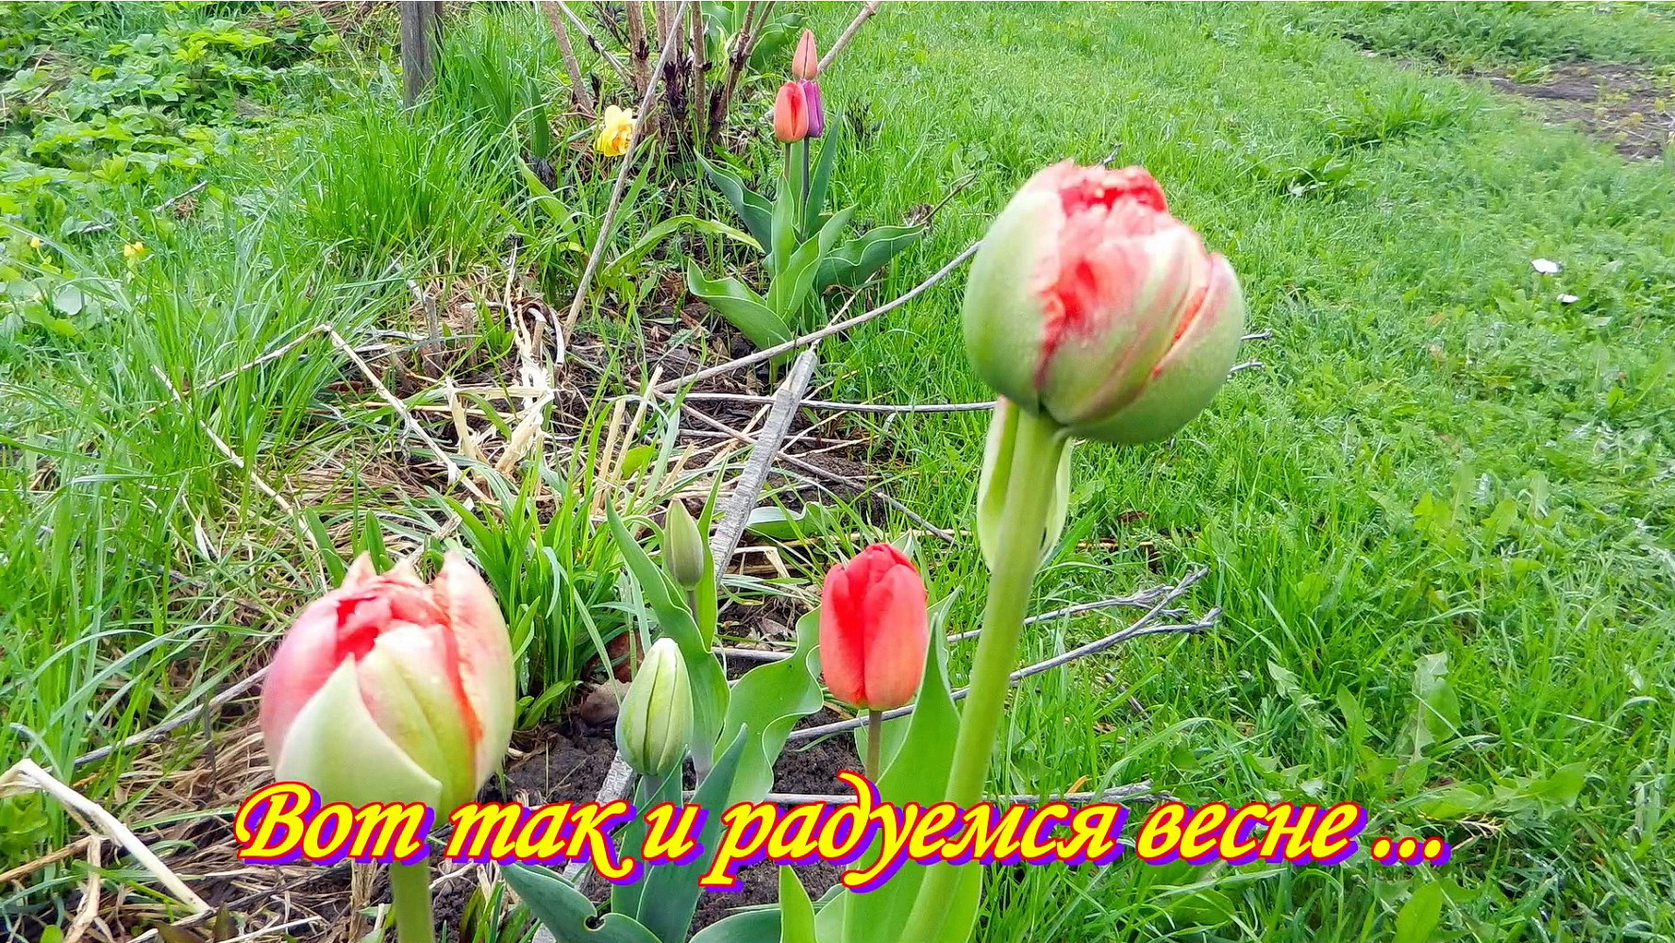 Вот так и радуемся весне ...   Дача, сад, огород. Часть № 23.